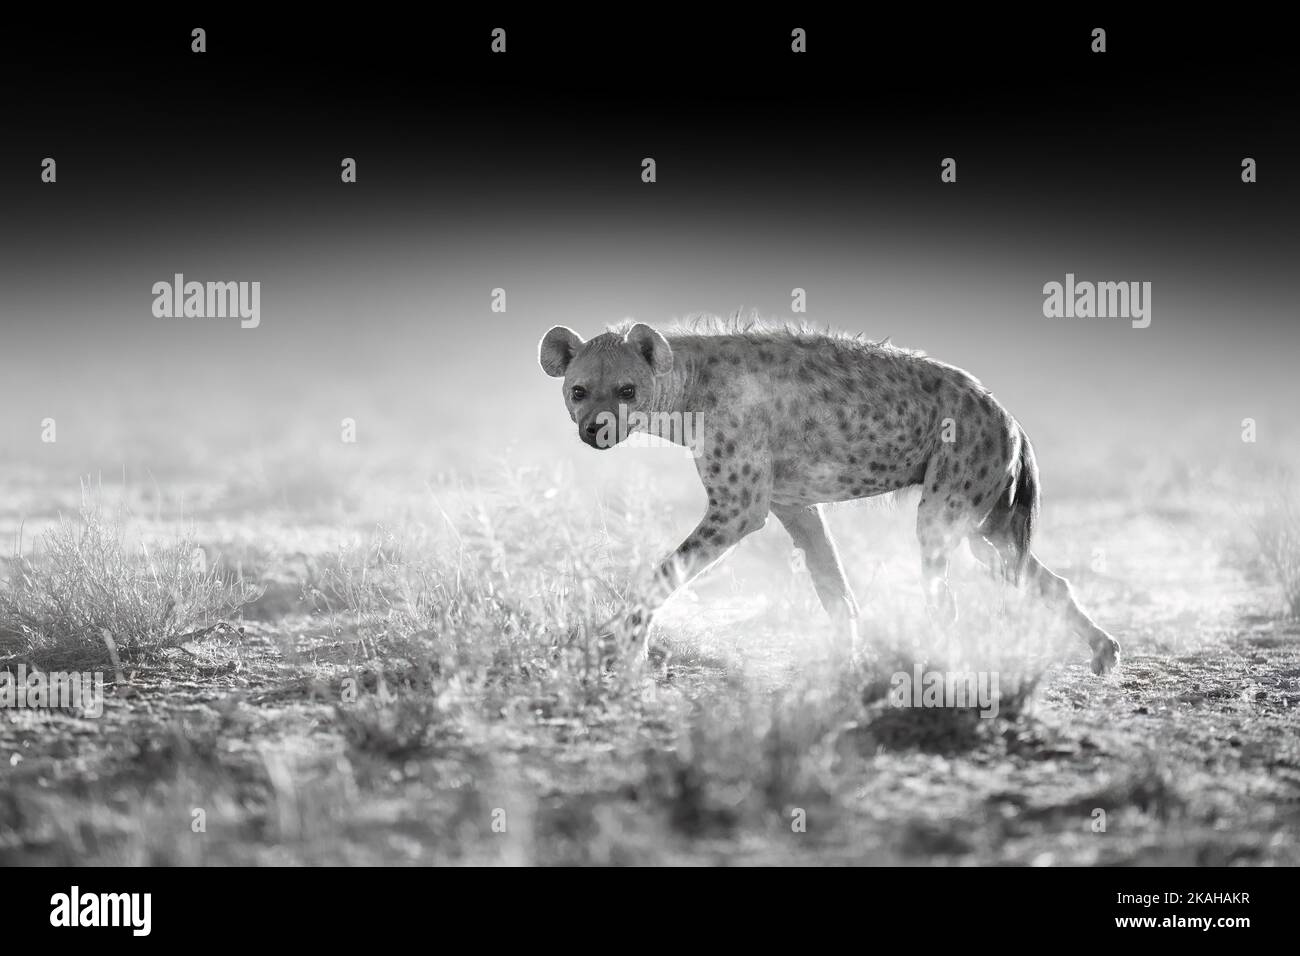 Hyena tachetée, Crocuta crocuta en mouvement. Noir et blanc, traitement artistique, environnement semi-désertique sec, arrière-plan sombre. Animaux de Kalahari, Botsw Banque D'Images